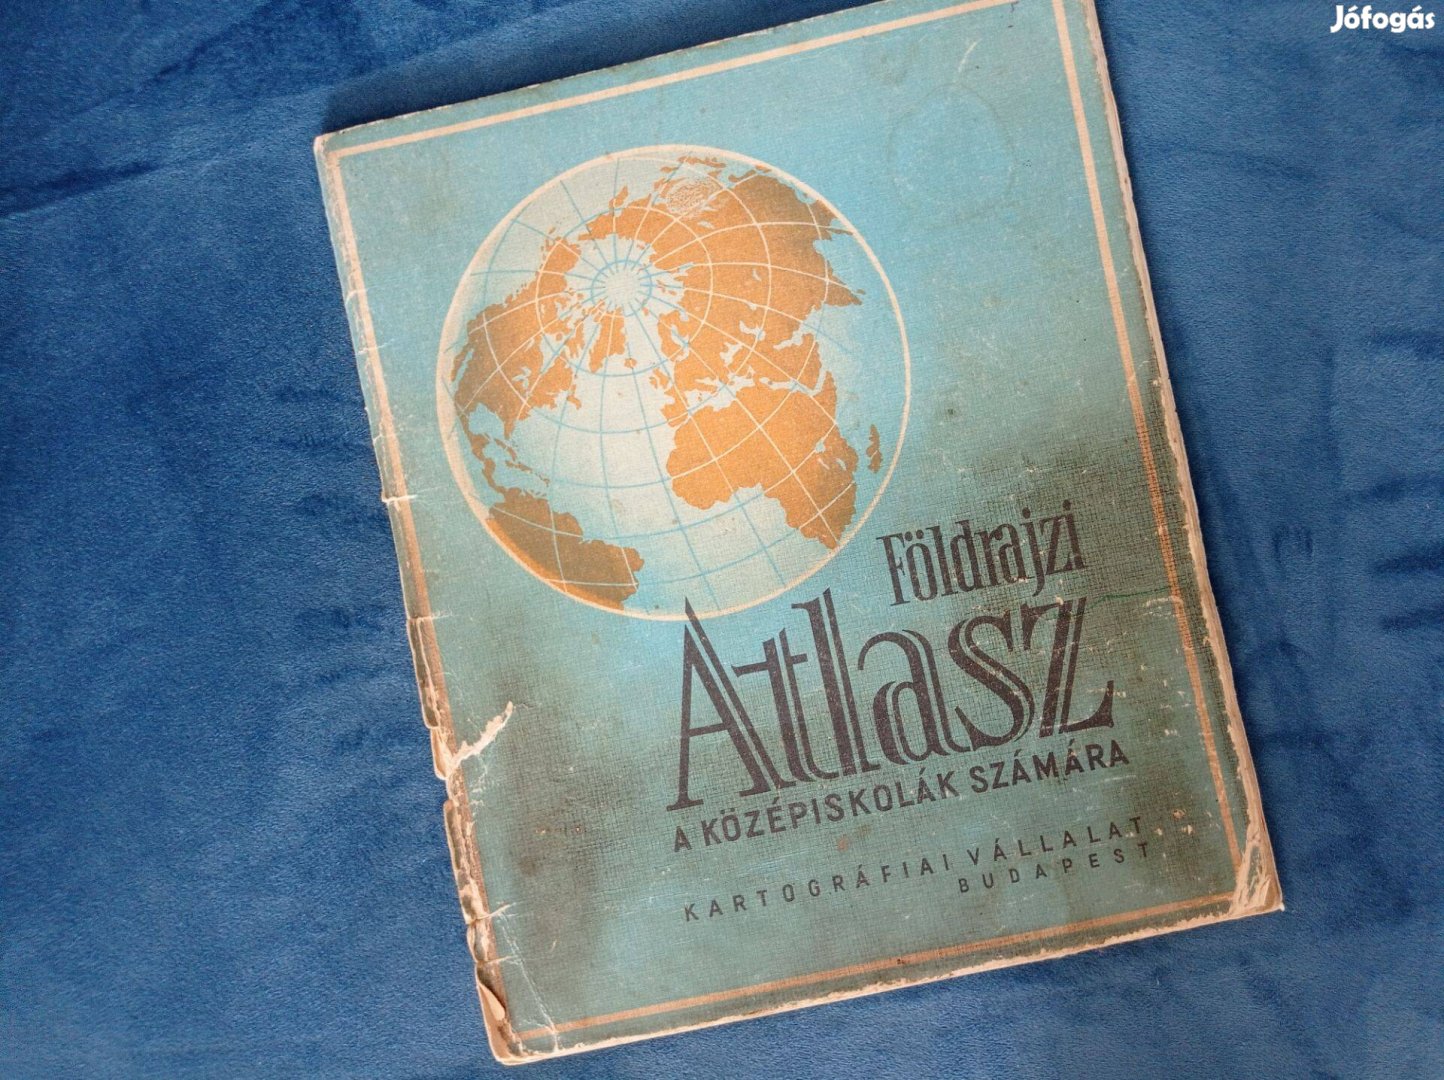 Földrajzi atlasz a középiskolák számára (Kartográfiai Vállalat, 1983)